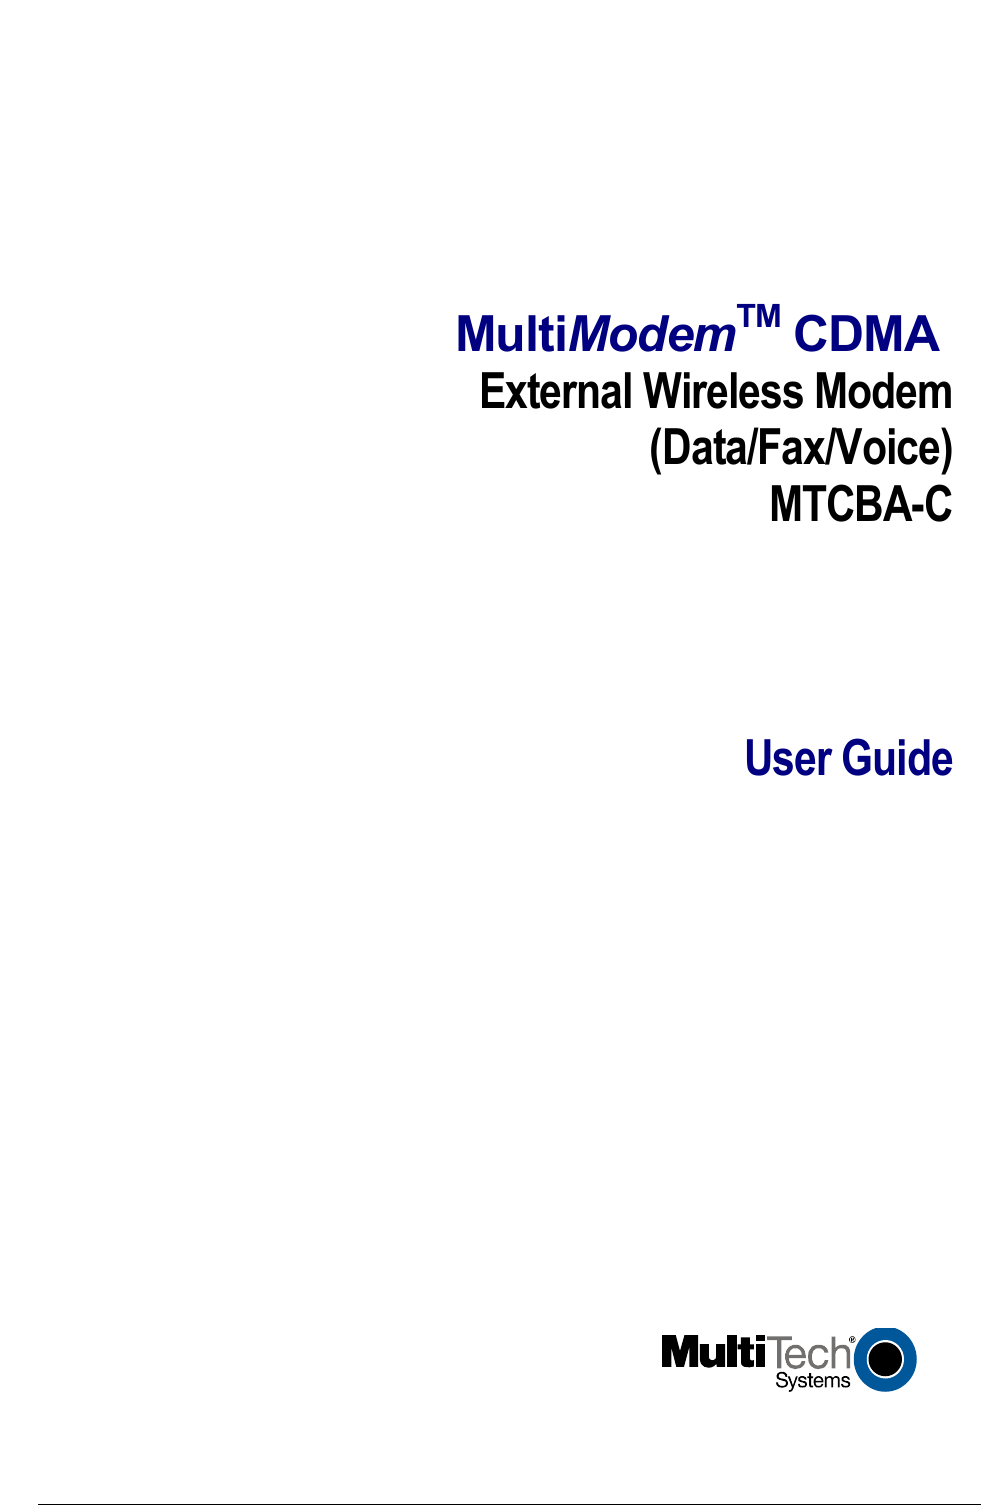   MultiModemTM CDMA External Wireless Modem(Data/Fax/Voice)MTCBA-CUser Guide